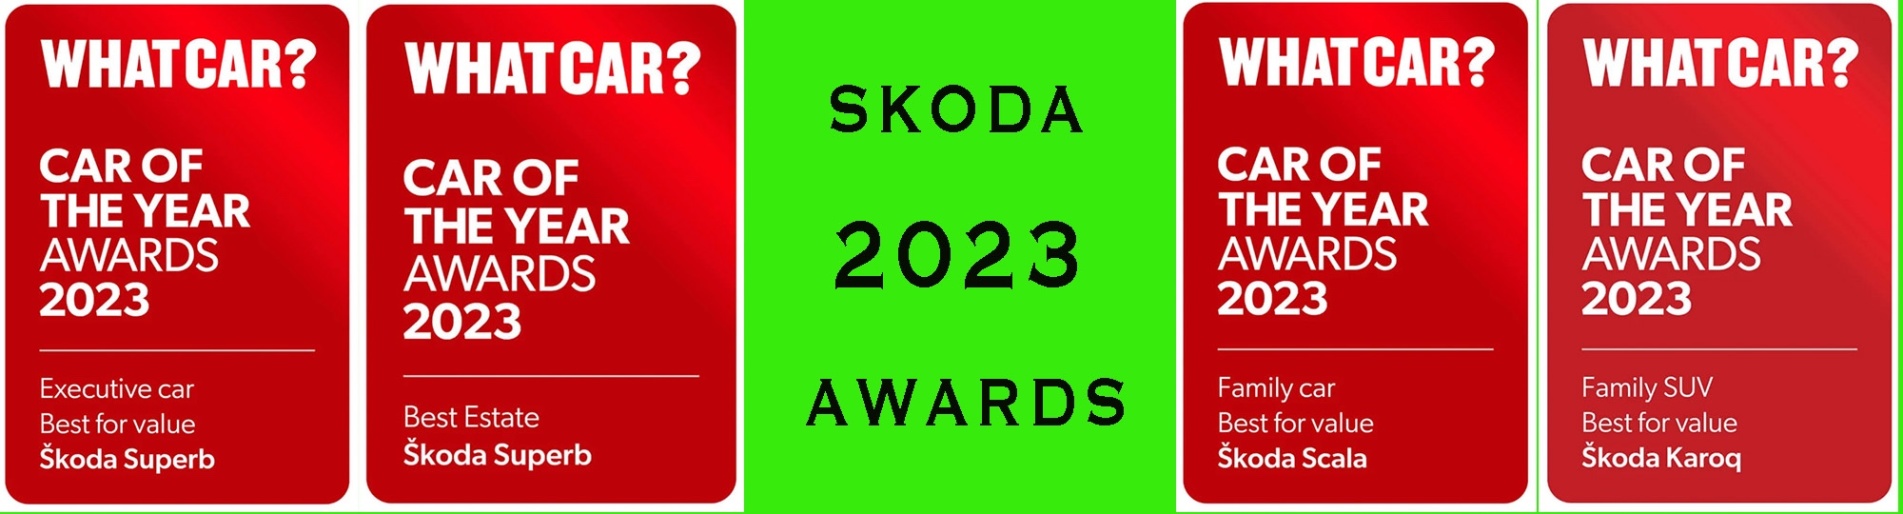 Skoda Awards